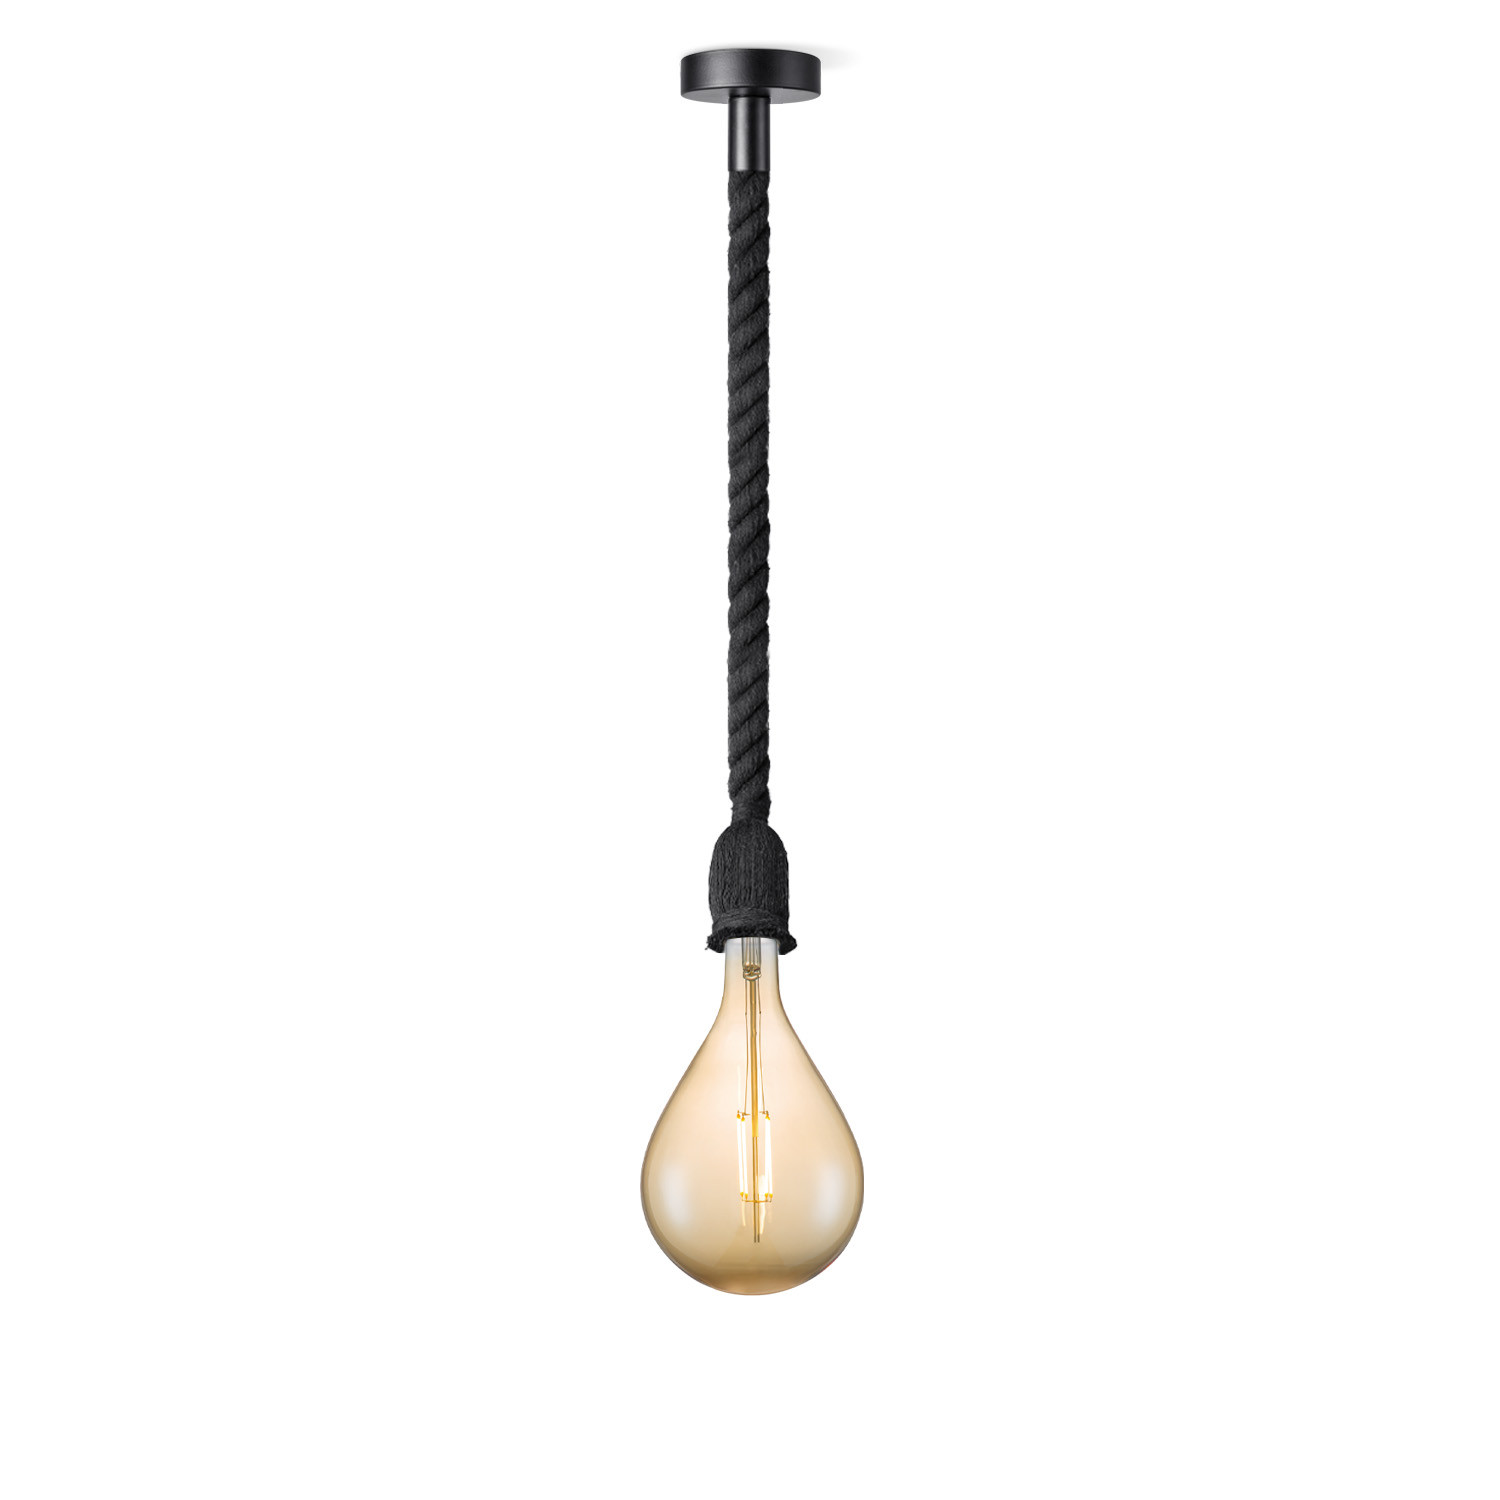 Light depot - hanglamp Leonardo zwart Pear - amber - Outlet